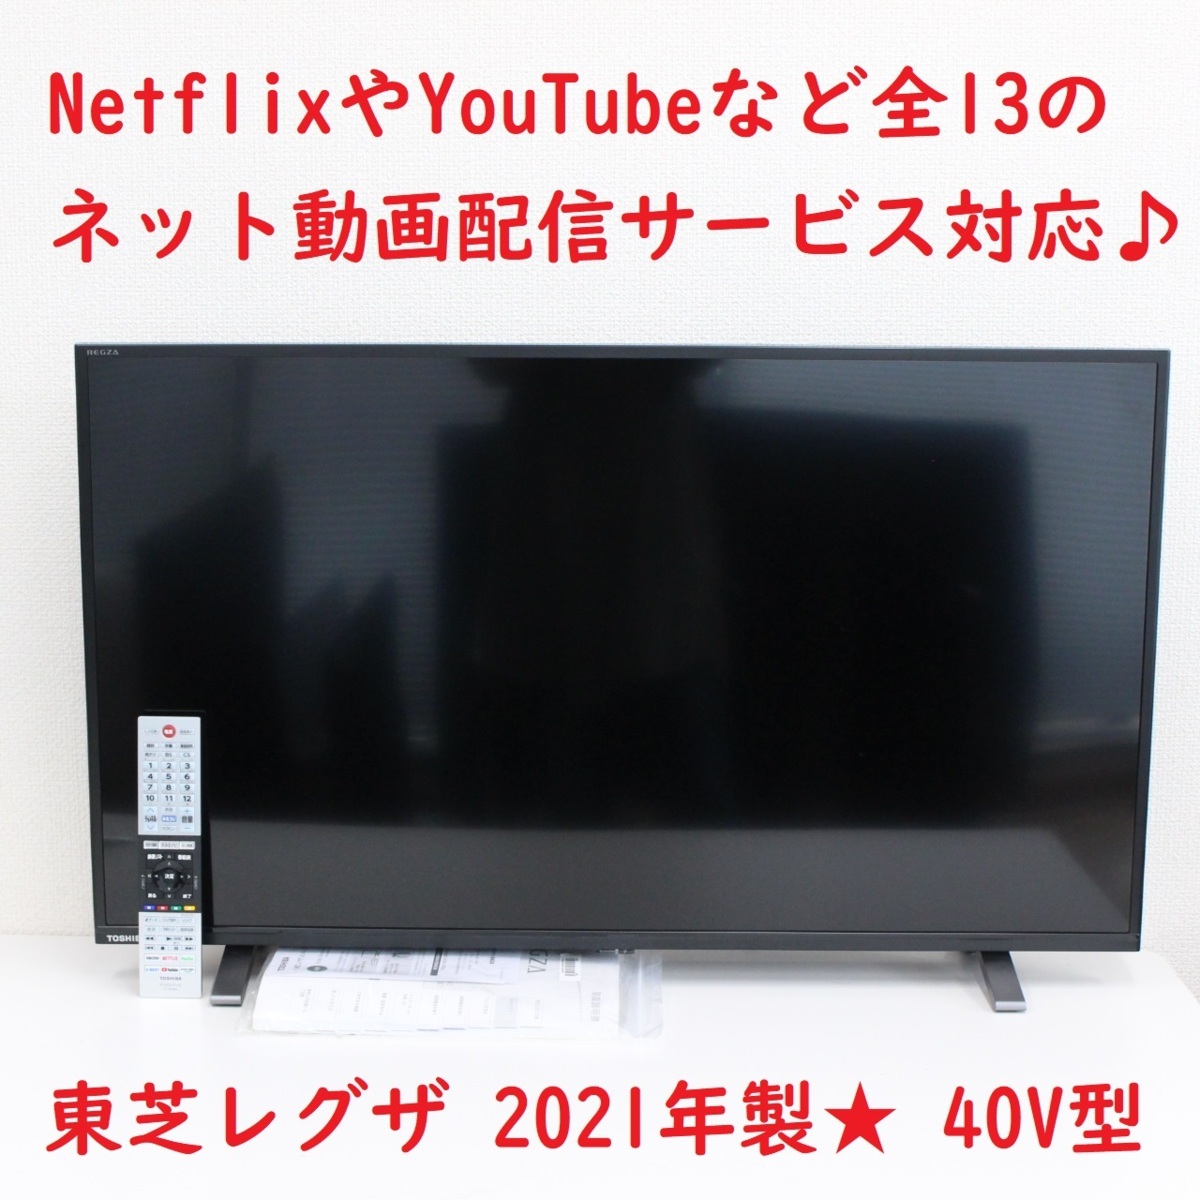 東京都中野区にて 東芝 TOSHIBA 液晶テレビ 40V34 レグザ 2021年製 を出張買取させて頂きました。